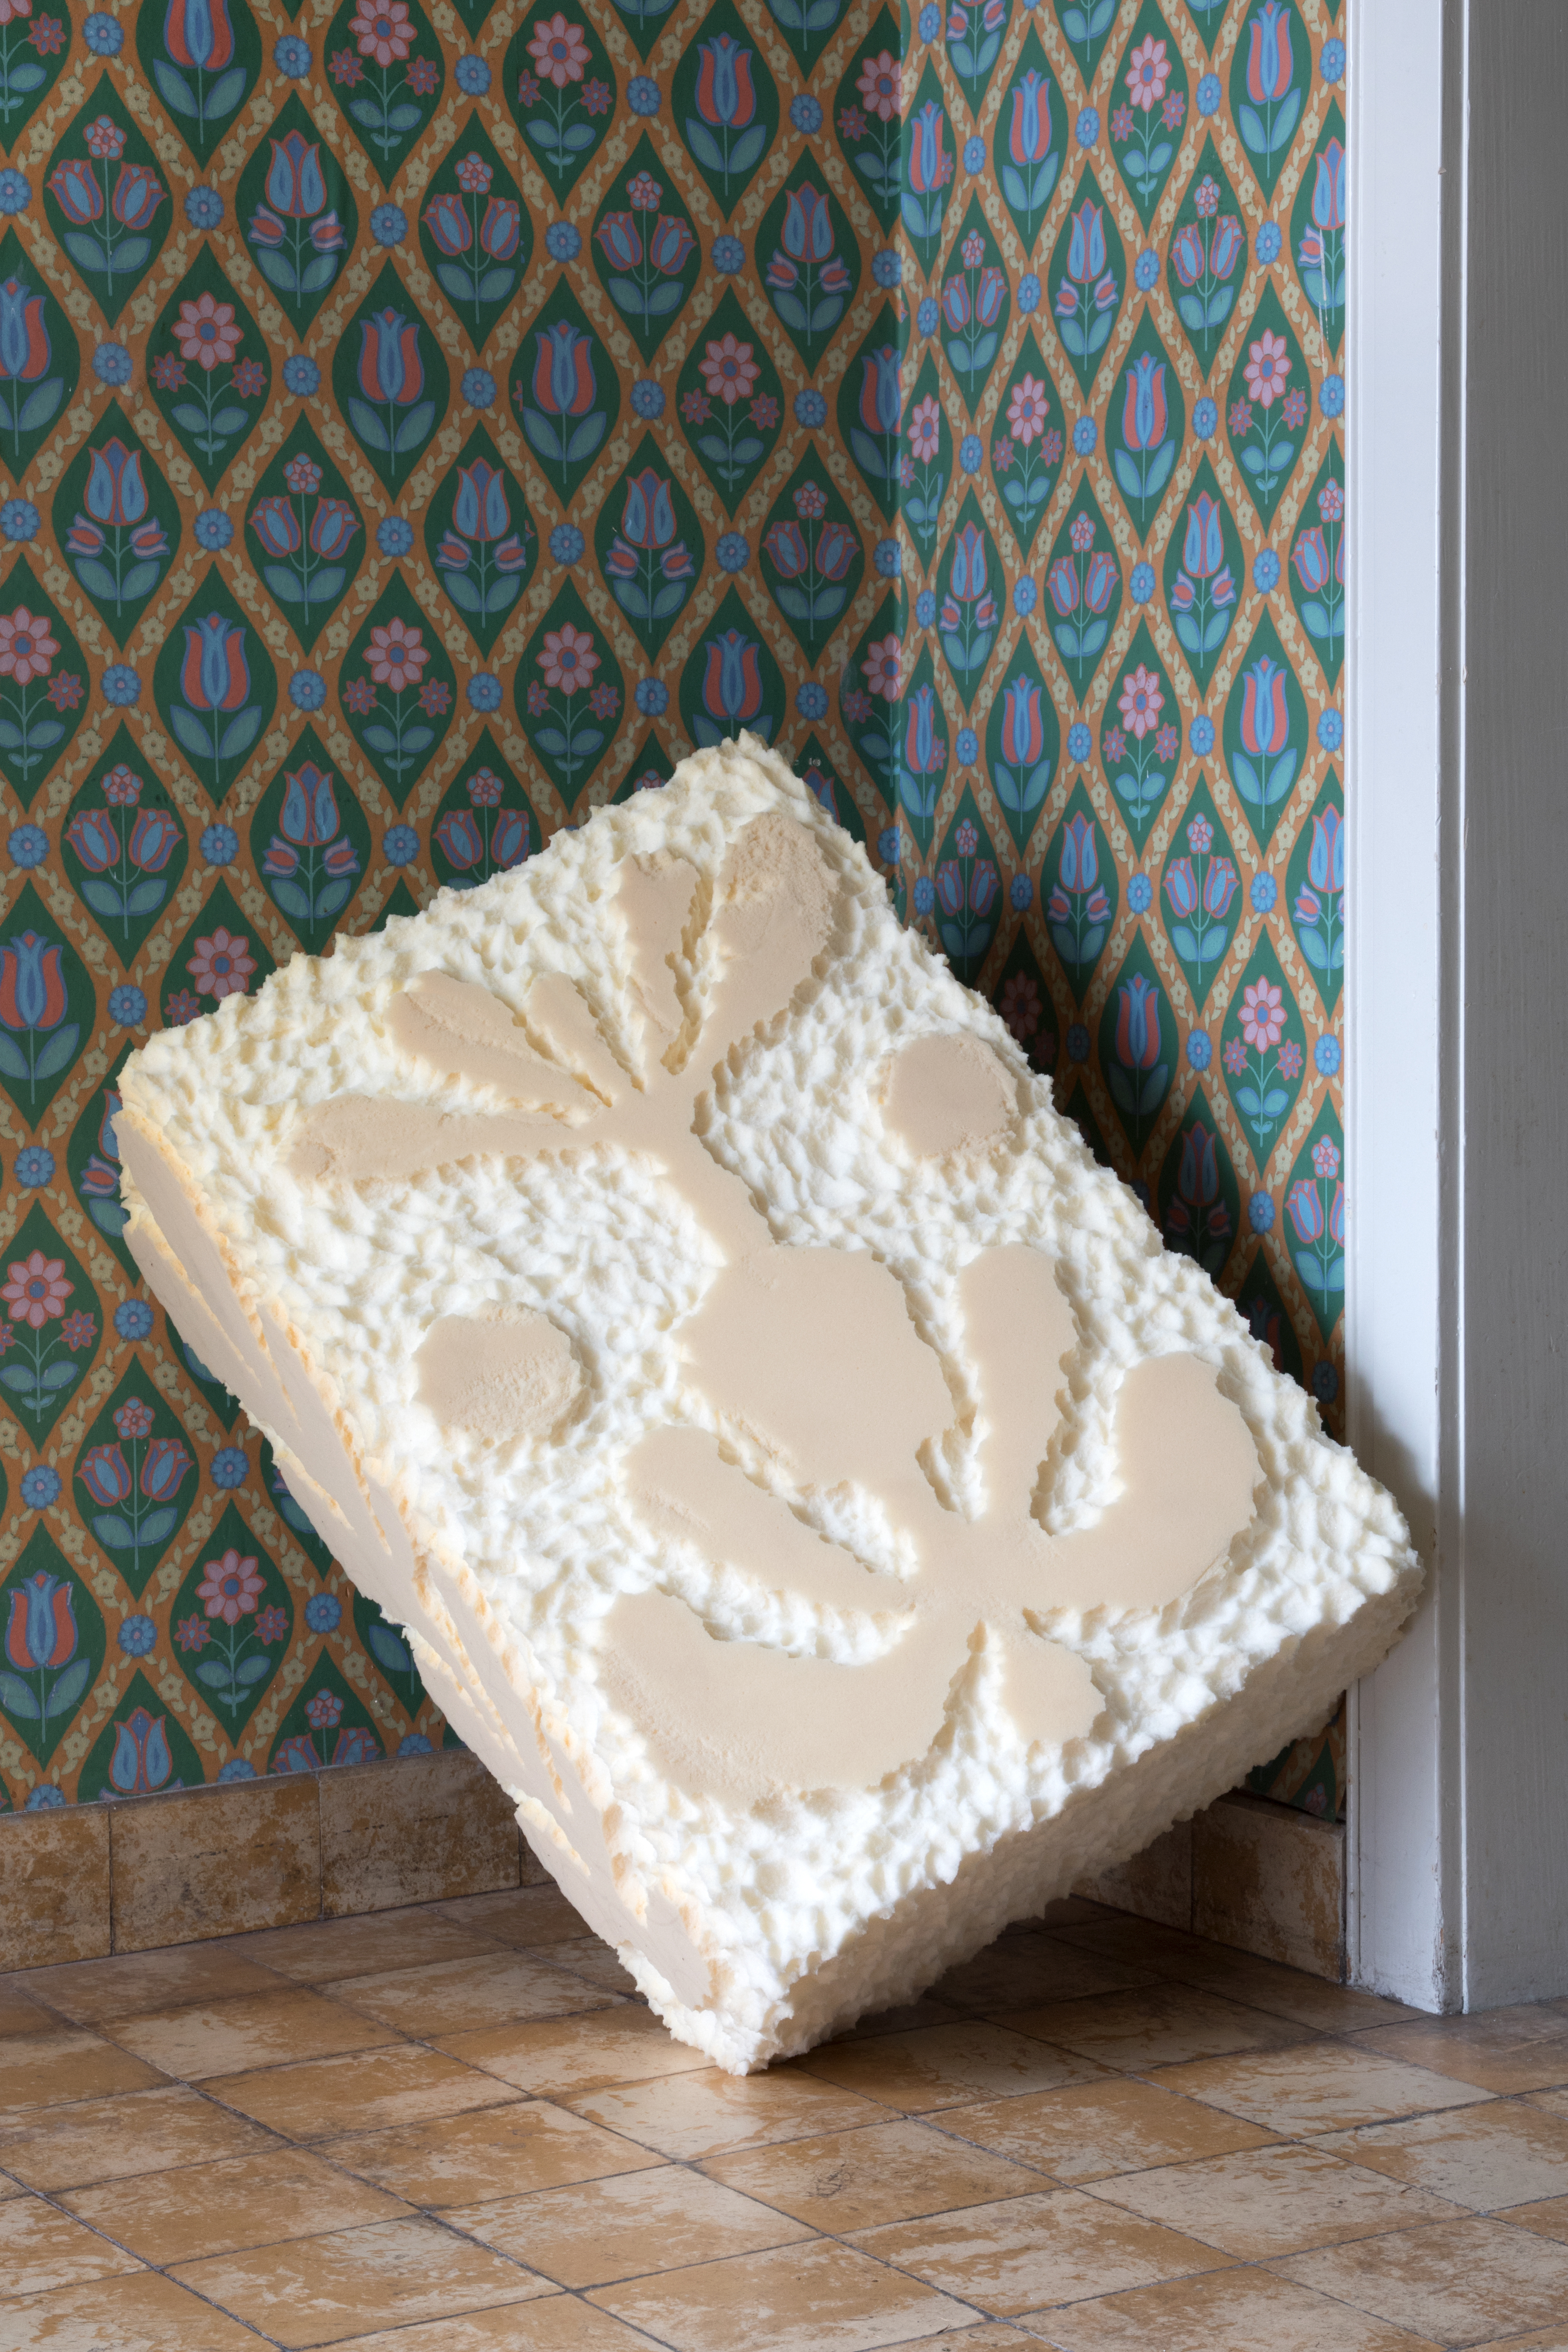 Jannis Zell, *Soft Facade Stool Klotz*, Polyurethan foam, 70×50×25cm